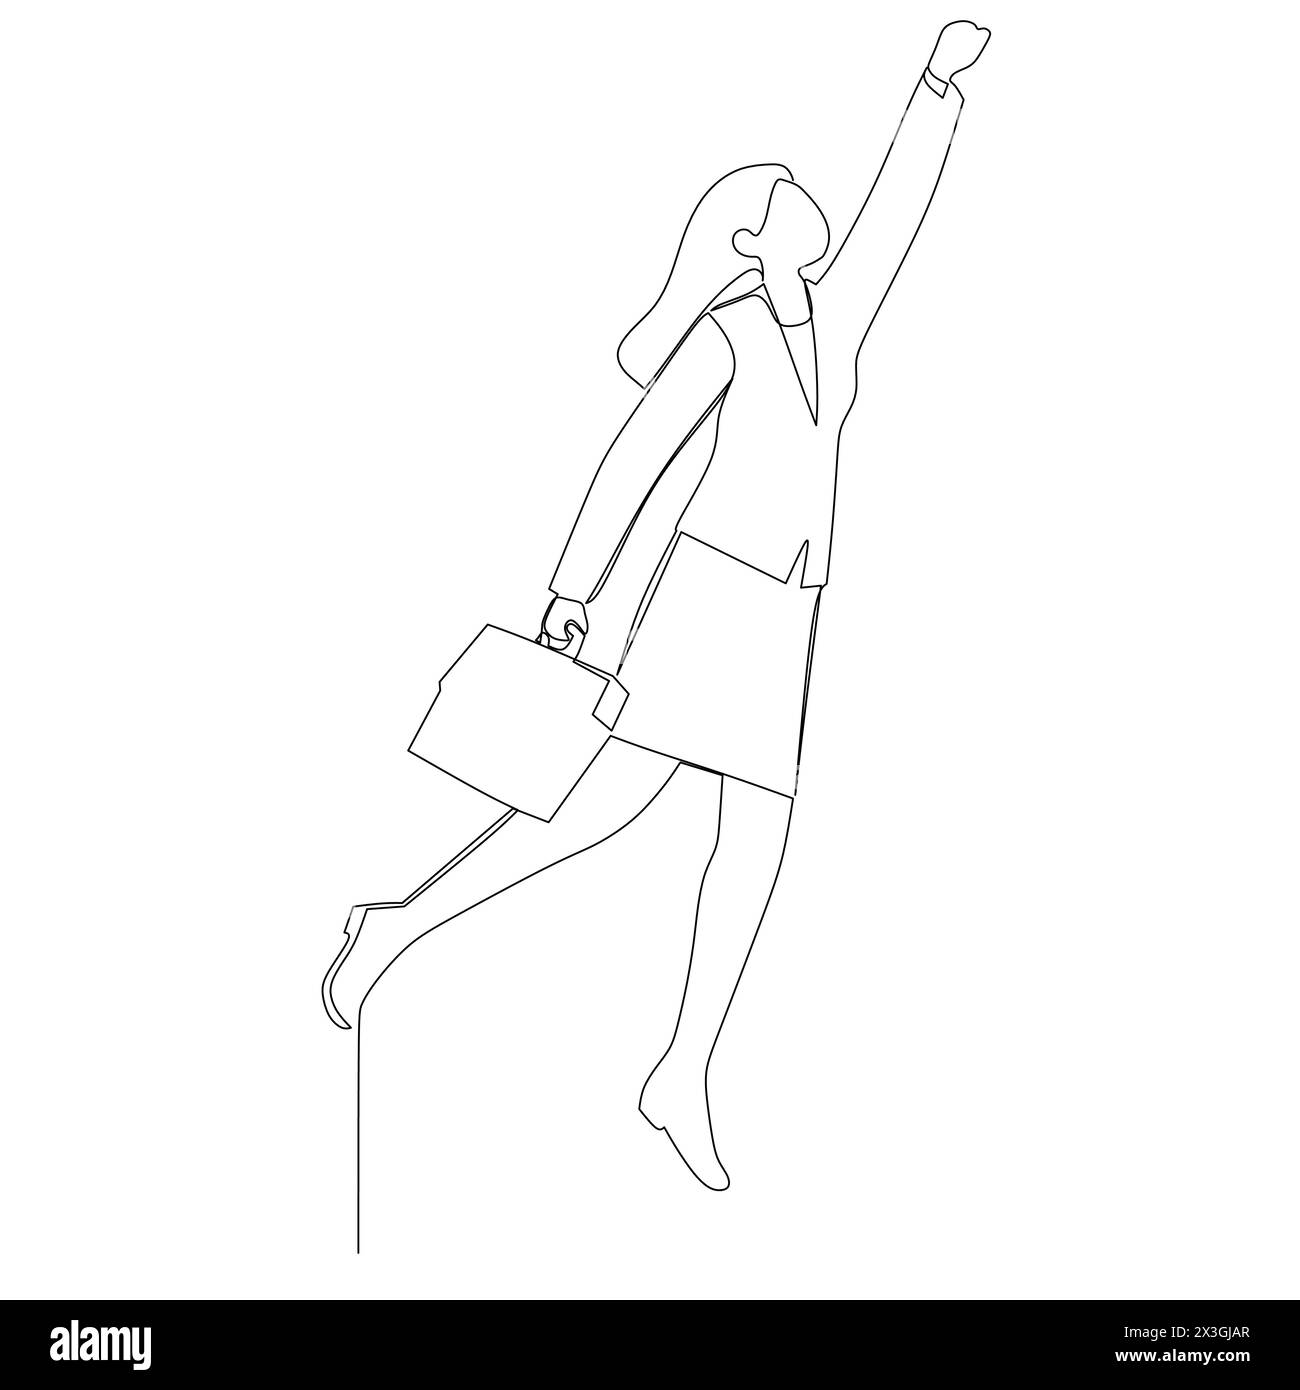 Fortlaufende, einfache, abstrakte Linienzeichnung einer glücklichen Geschäftsfrau mit Aktenkoffer, die in einem hohen Bereich gefangen ist. Fortschrittliches Geschäftskonzept Stock Vektor